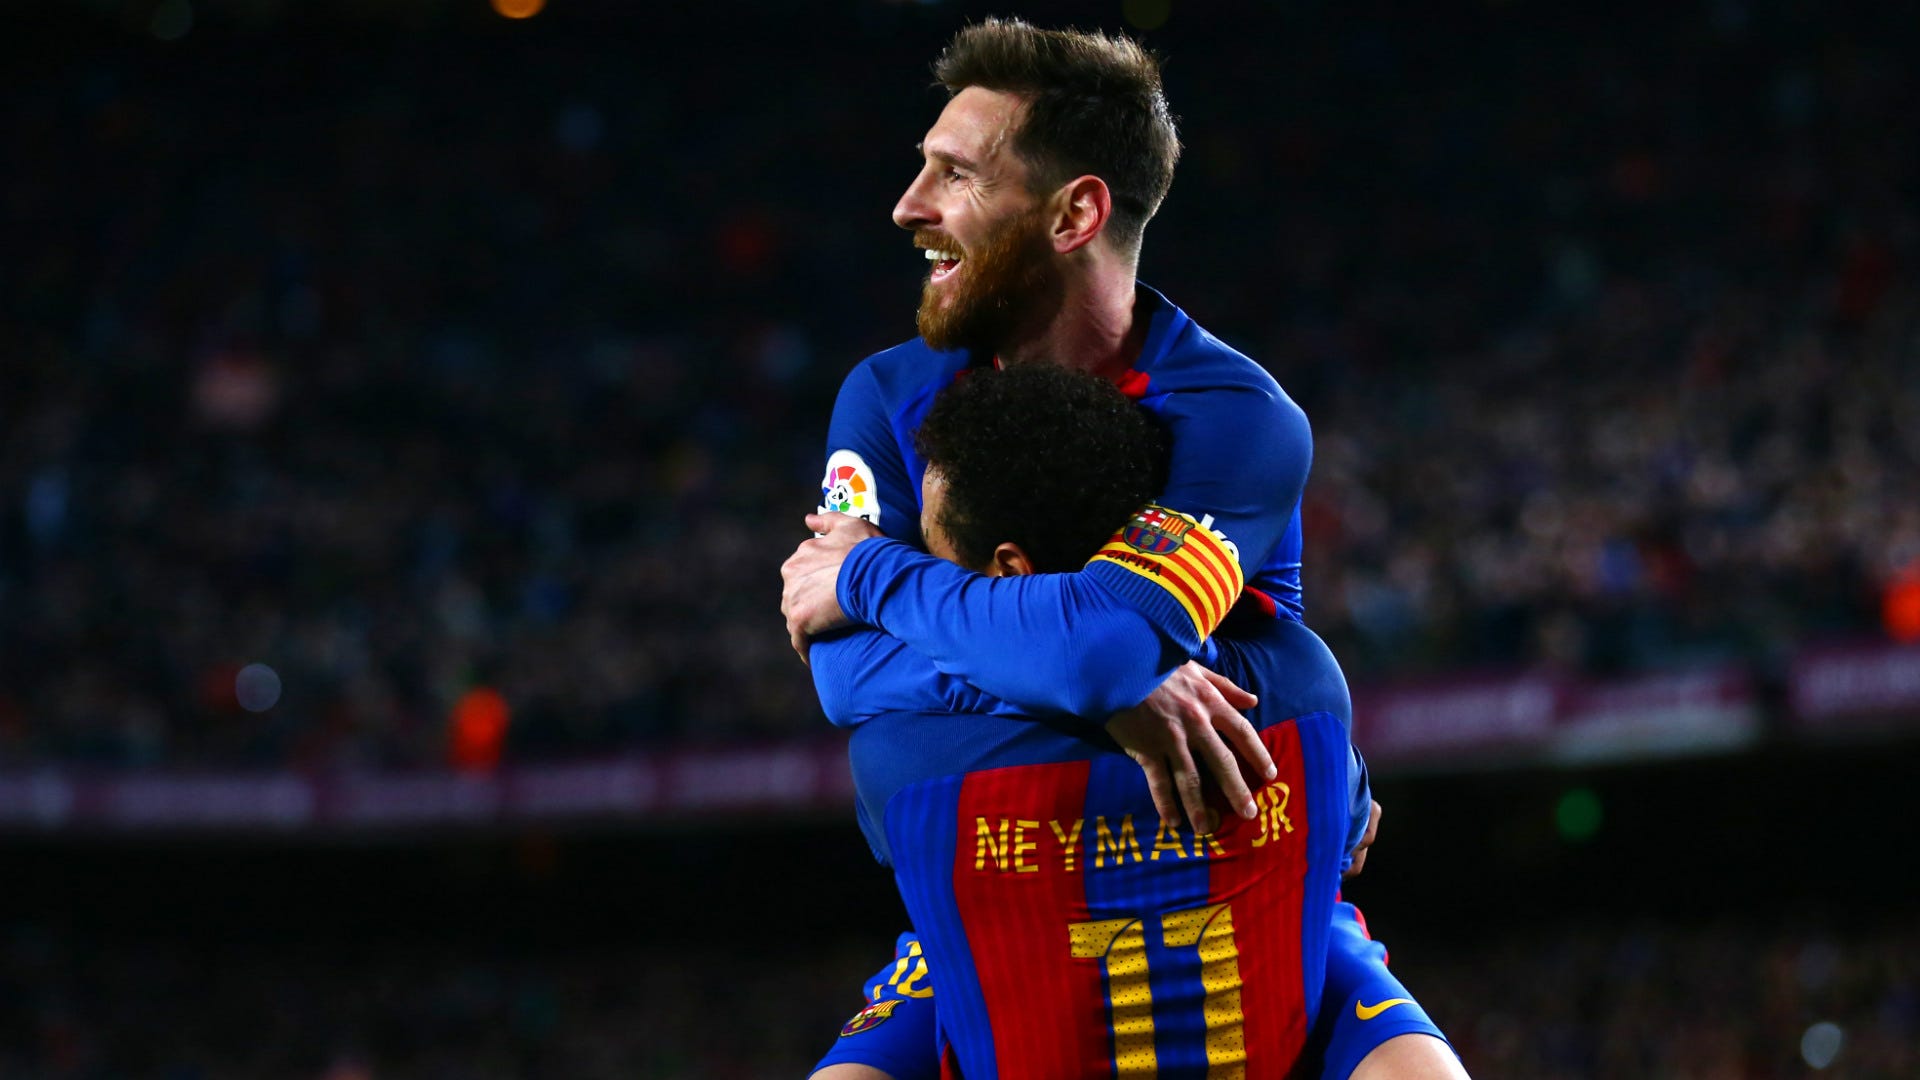 Quay trở lại Barcelona sẽ là hành trình đáng nhớ cho bất kỳ người hâm mộ nào. Hãy khám phá siêu phẩm của Andres Iniesta hoặc sự nghiệp vĩ đại của Lionel Messi qua những bức hình đầy cảm hứng nhất. Bạn sẽ không thể rời mắt khỏi chúng!